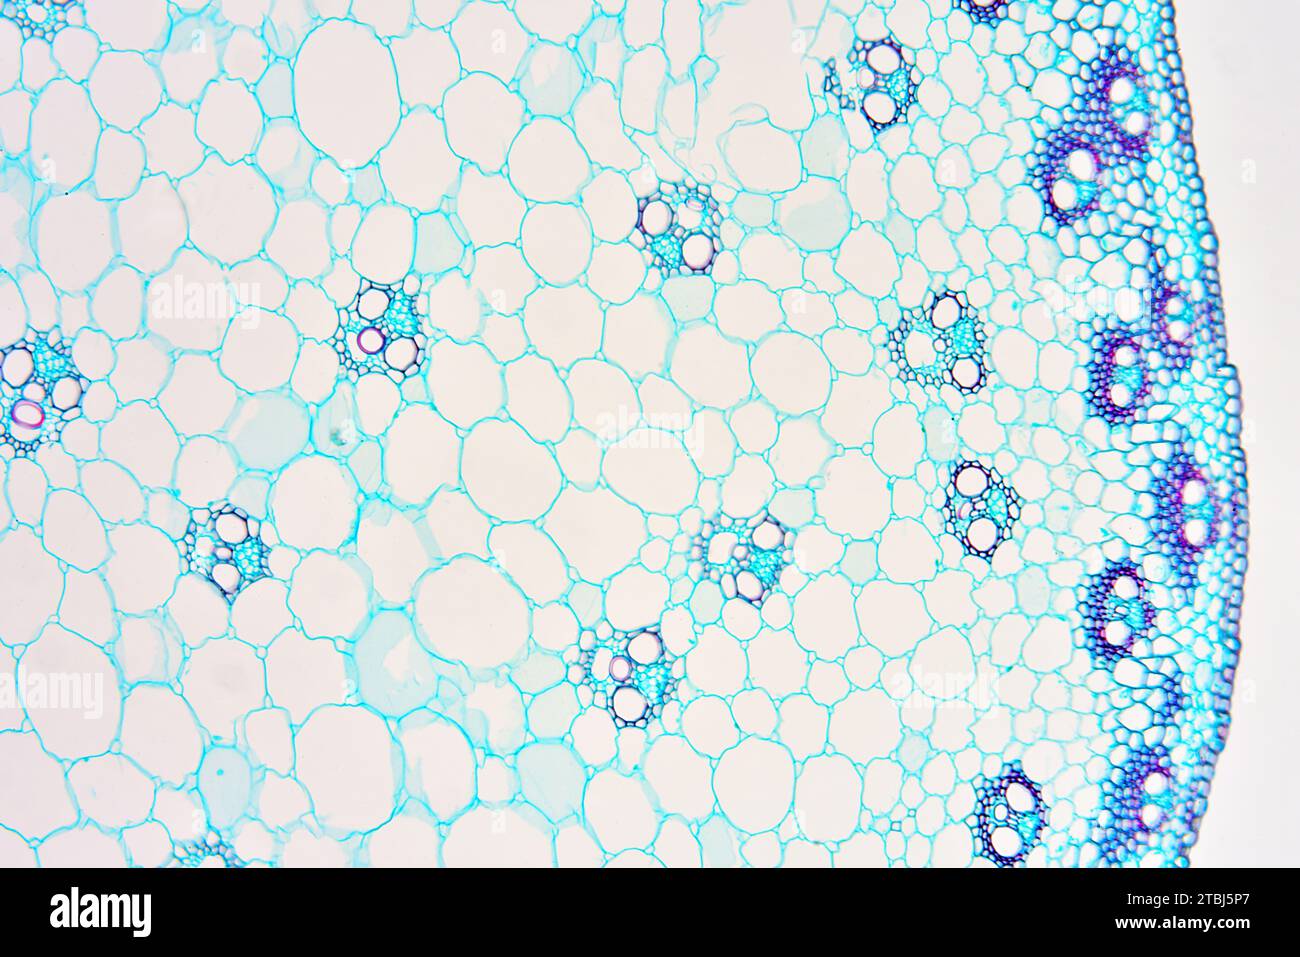 Monokotstiel (Triticum sp.) Zeigt Epidermis, Collenchym, Parenchym, Gefäßbündel, Phloem und Xylem. Optisches Mikroskop X100. Stockfoto